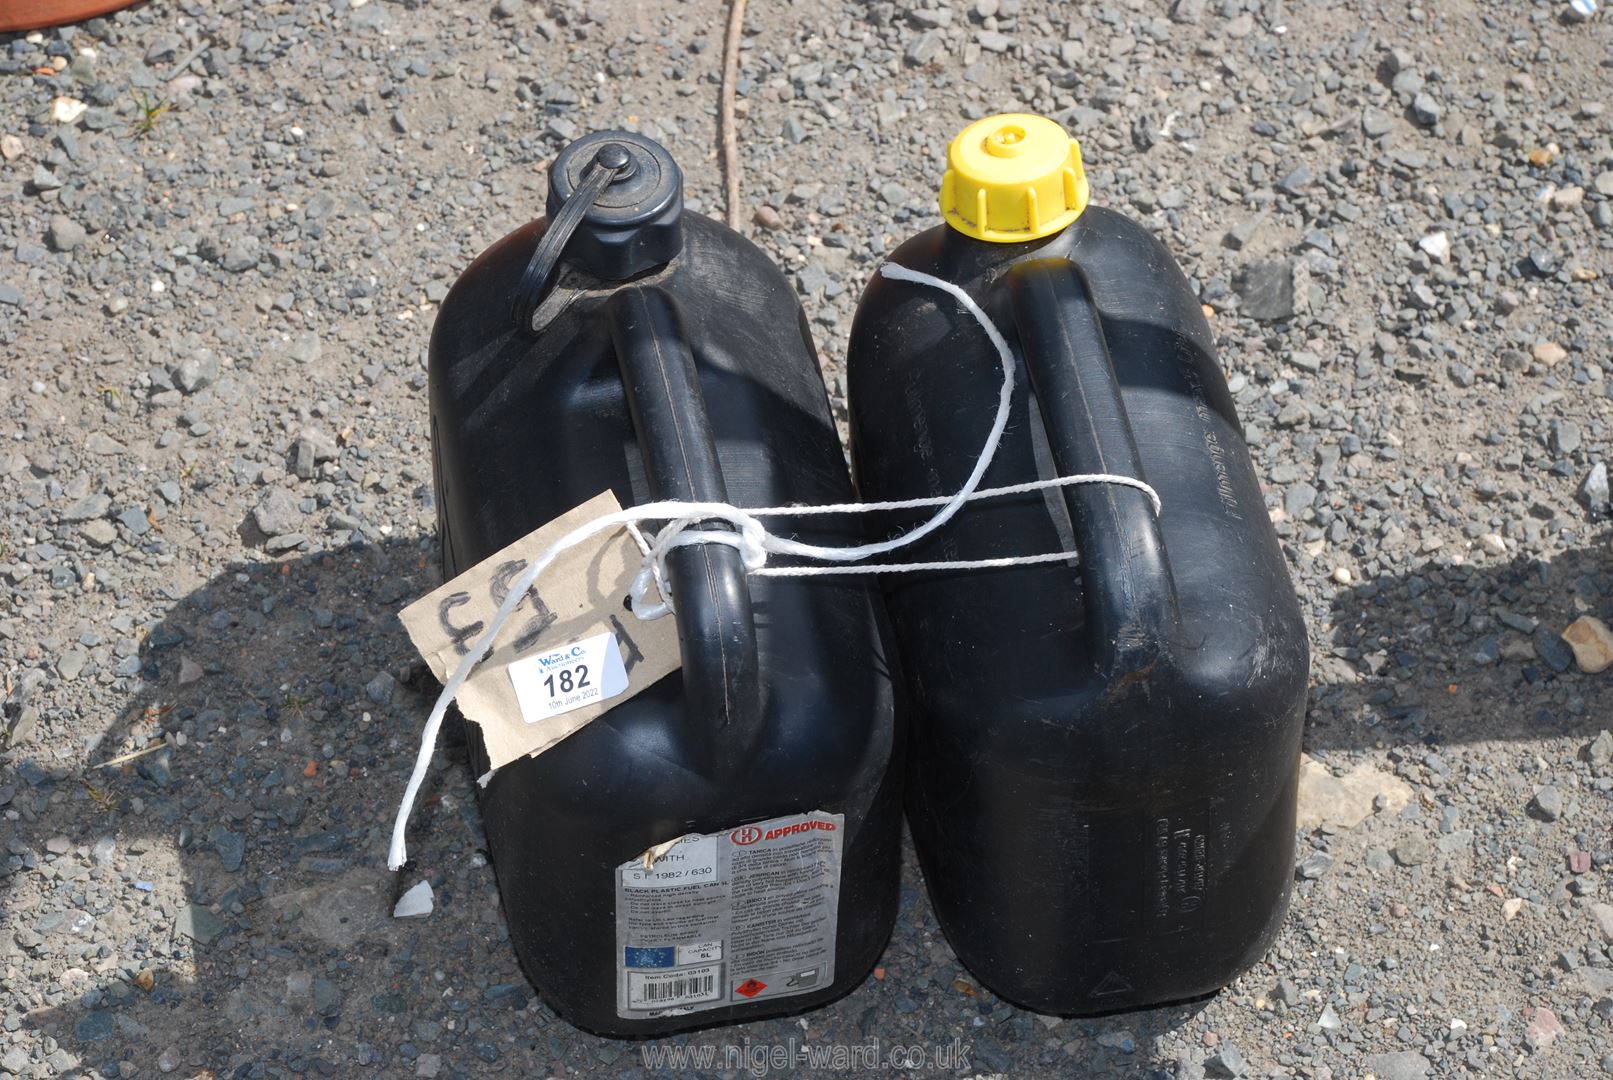 2 Black plastic diesel/petrol cans.